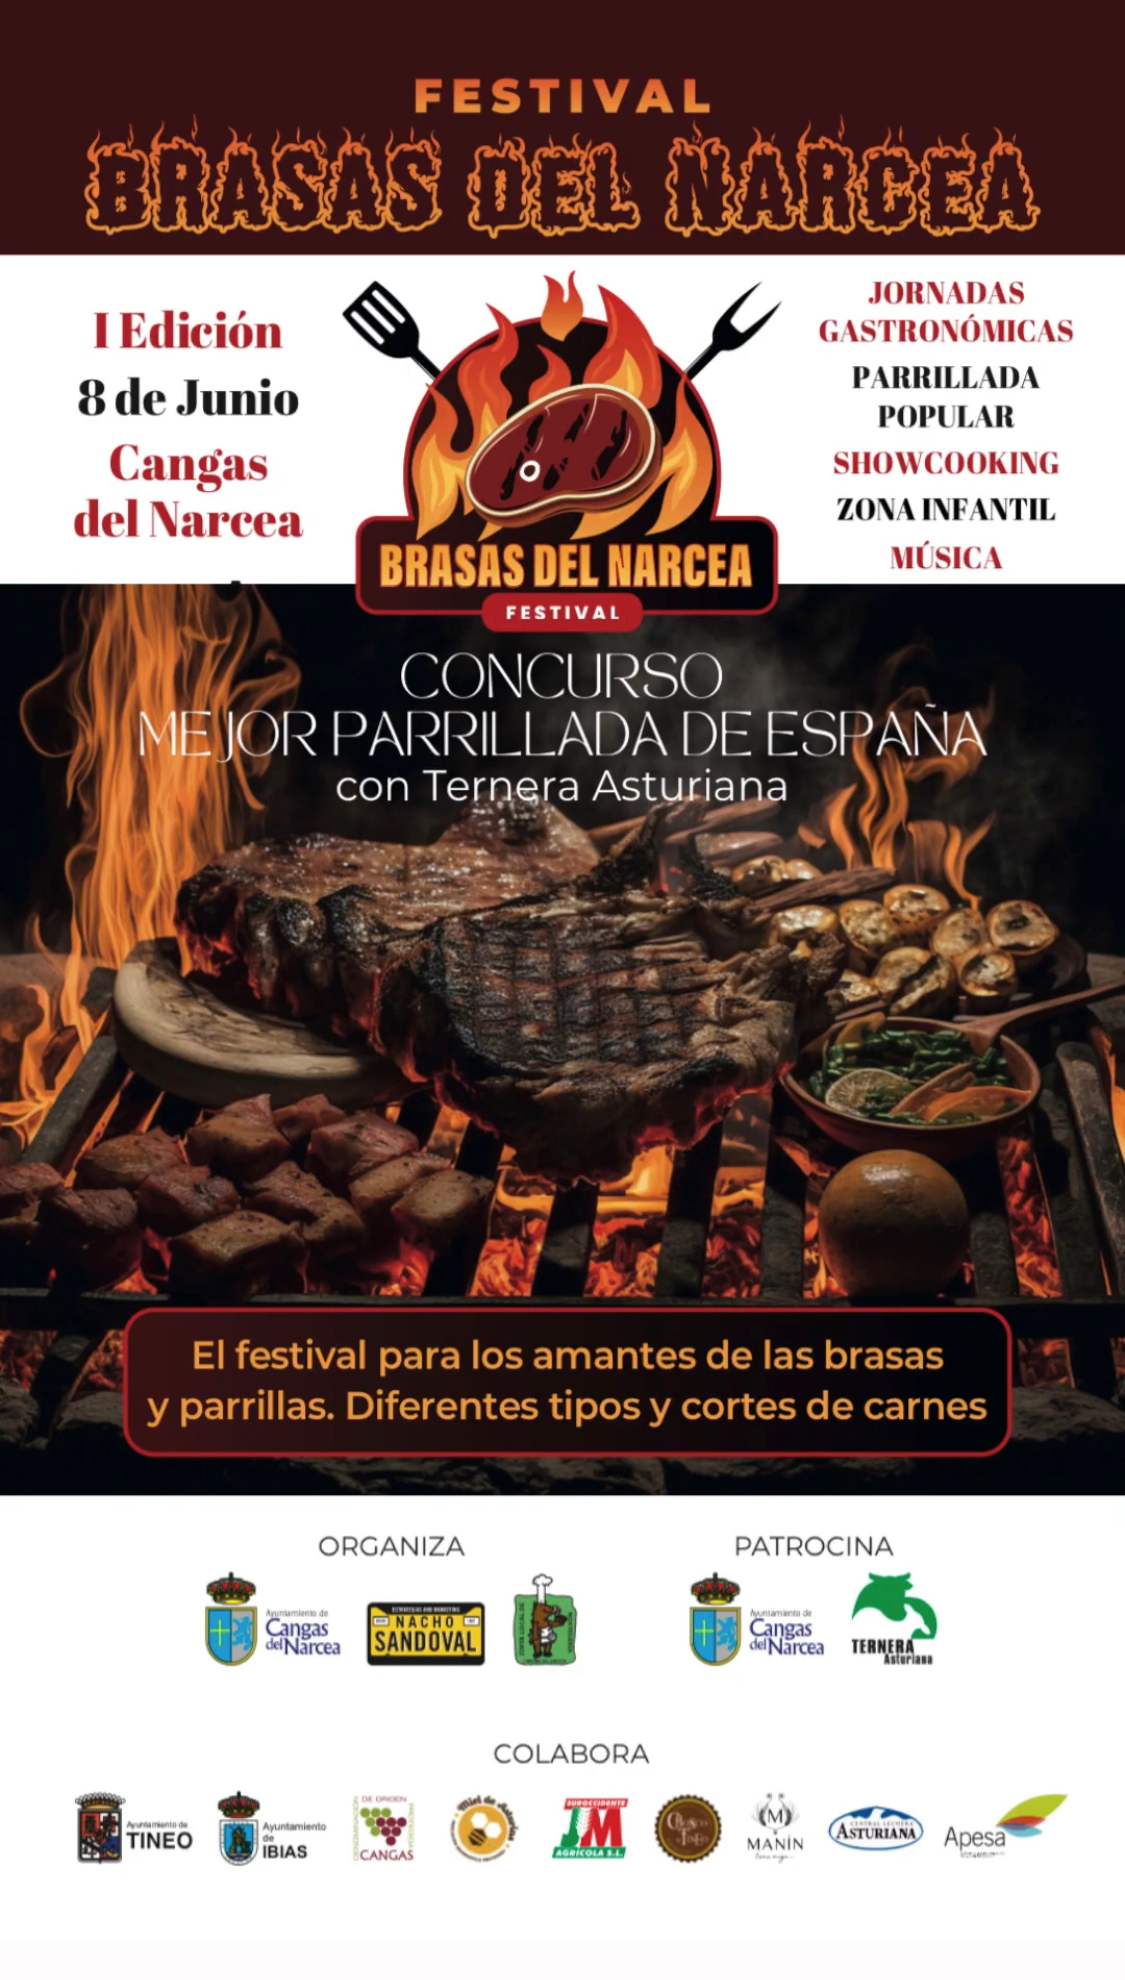 La Mejor Parrillada de España se elaborará con Ternera Asturiana en el Festival “Brasas del Narcea”